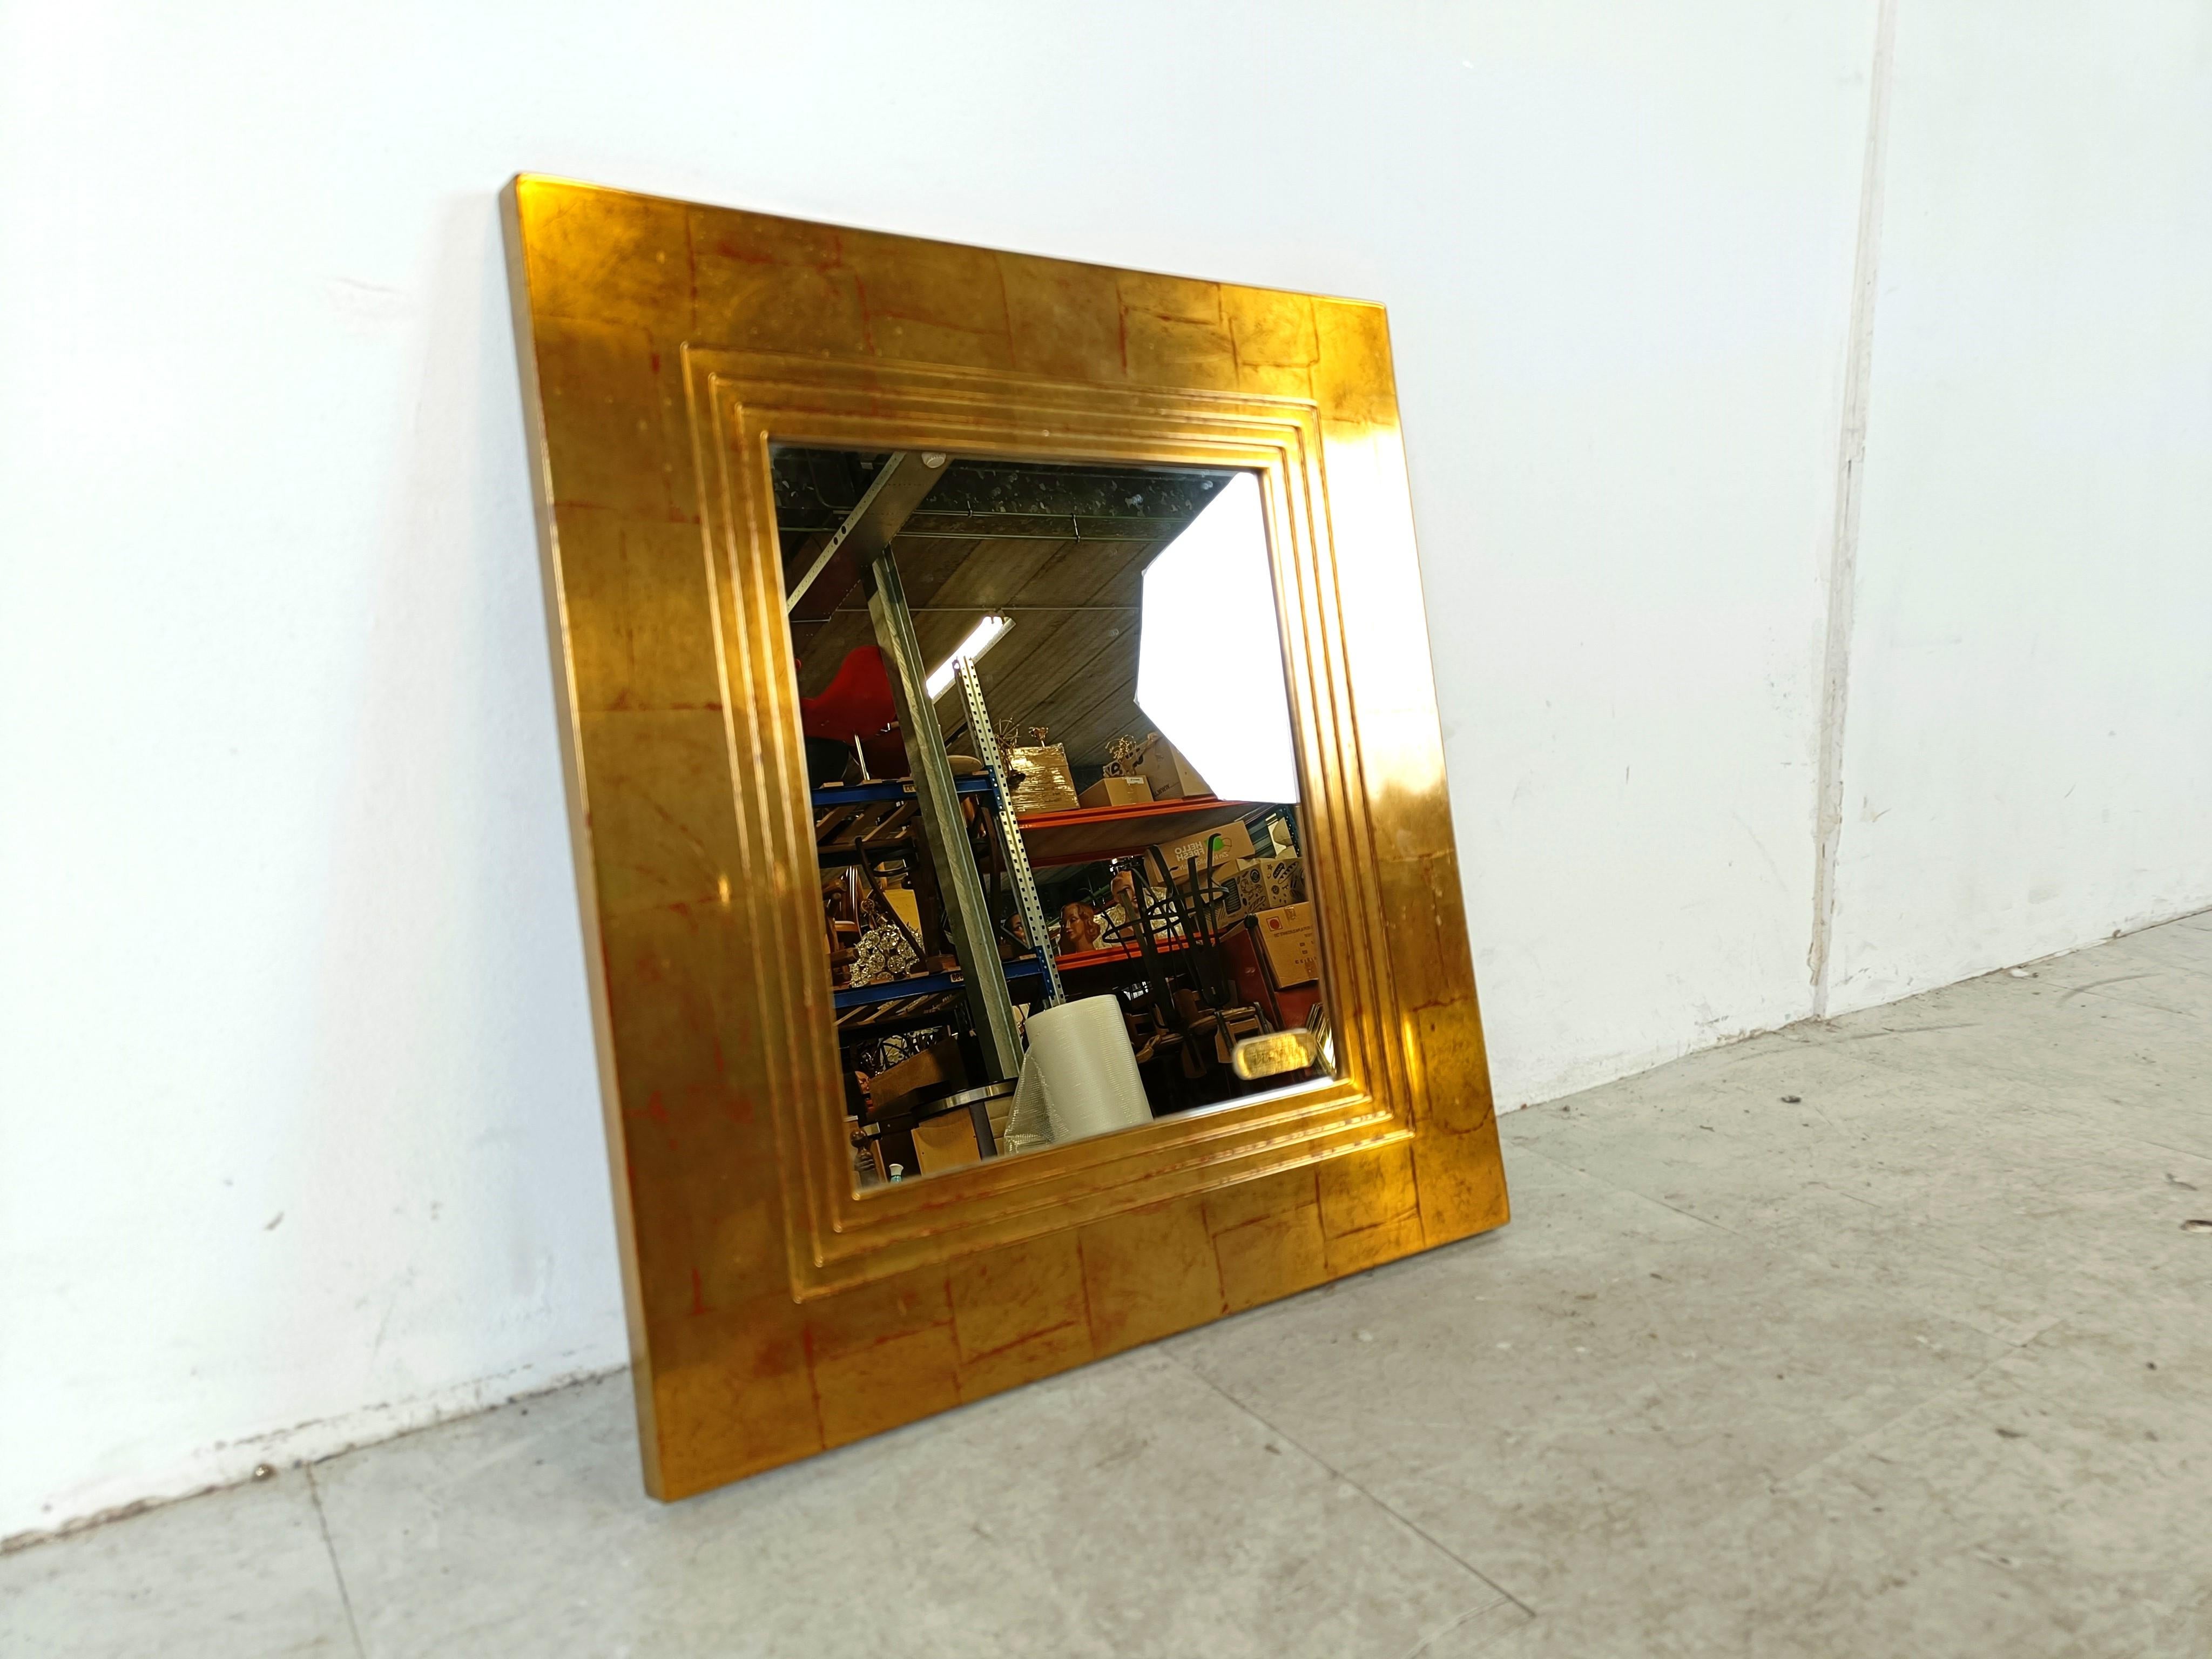 Miroir en bois doré des années 70 par Deknudt.

magnifique cadre en 3D.

Labellisé sur le miroir.

Années 1970 - Belgique

Dimensions :
Hauteur : 47cm/18.50